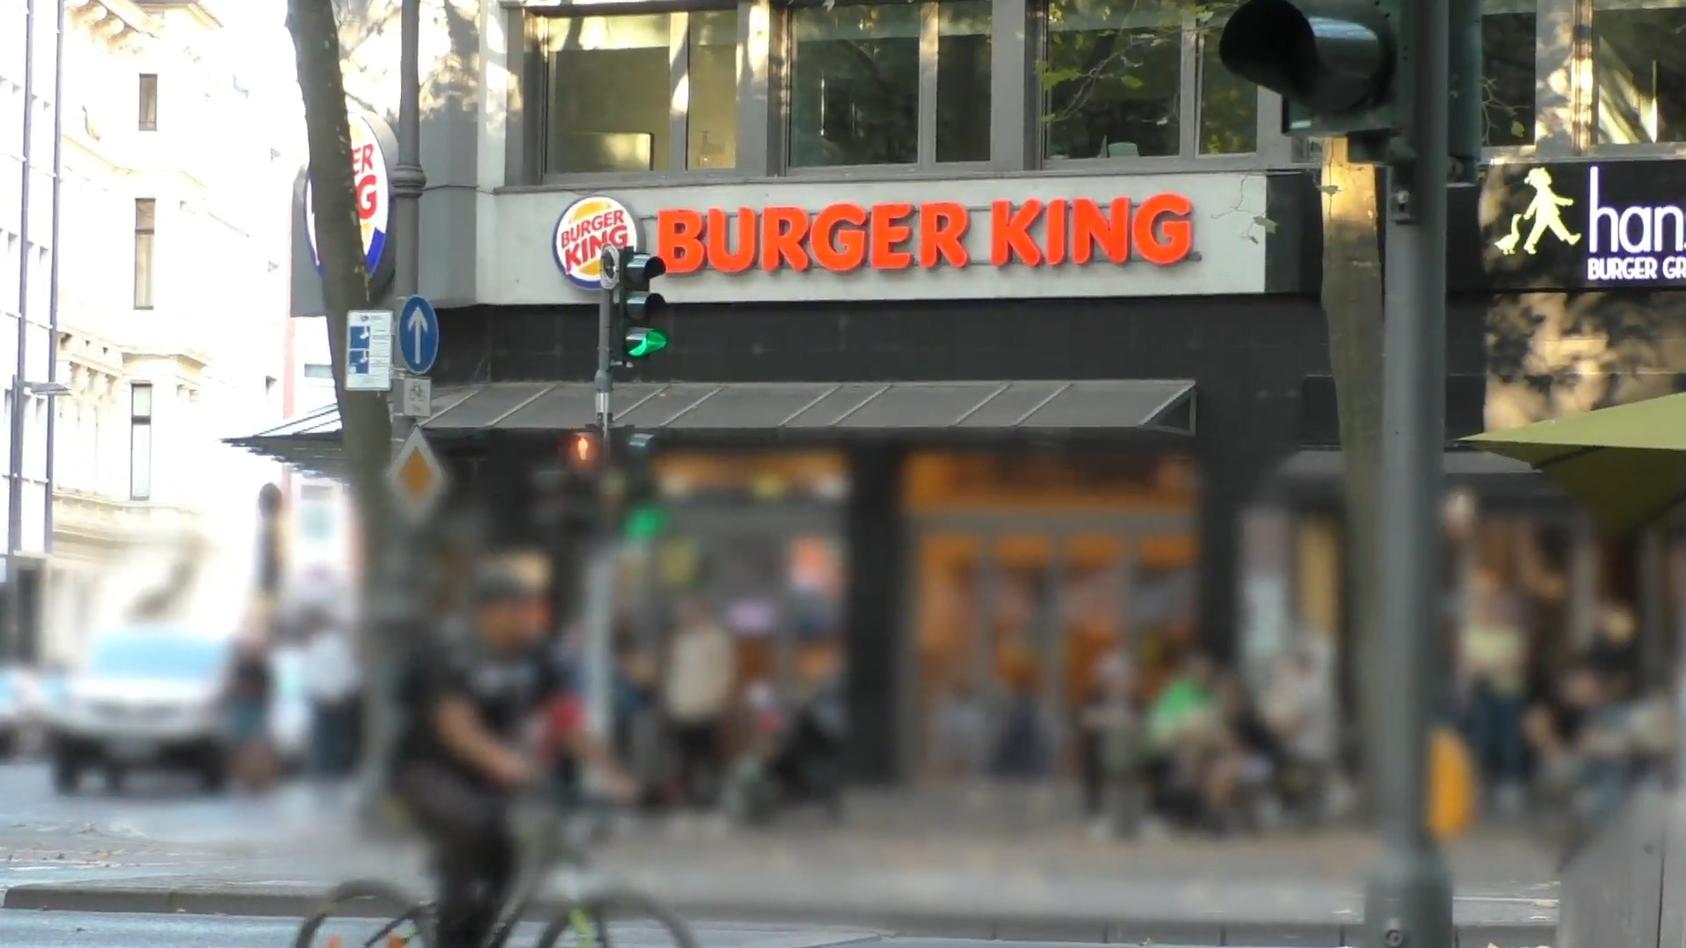 Mäuse, Maden, Gammel-Essen - Filialen zu! So reagiert Burger King nach den Wallraff-Enthüllungen